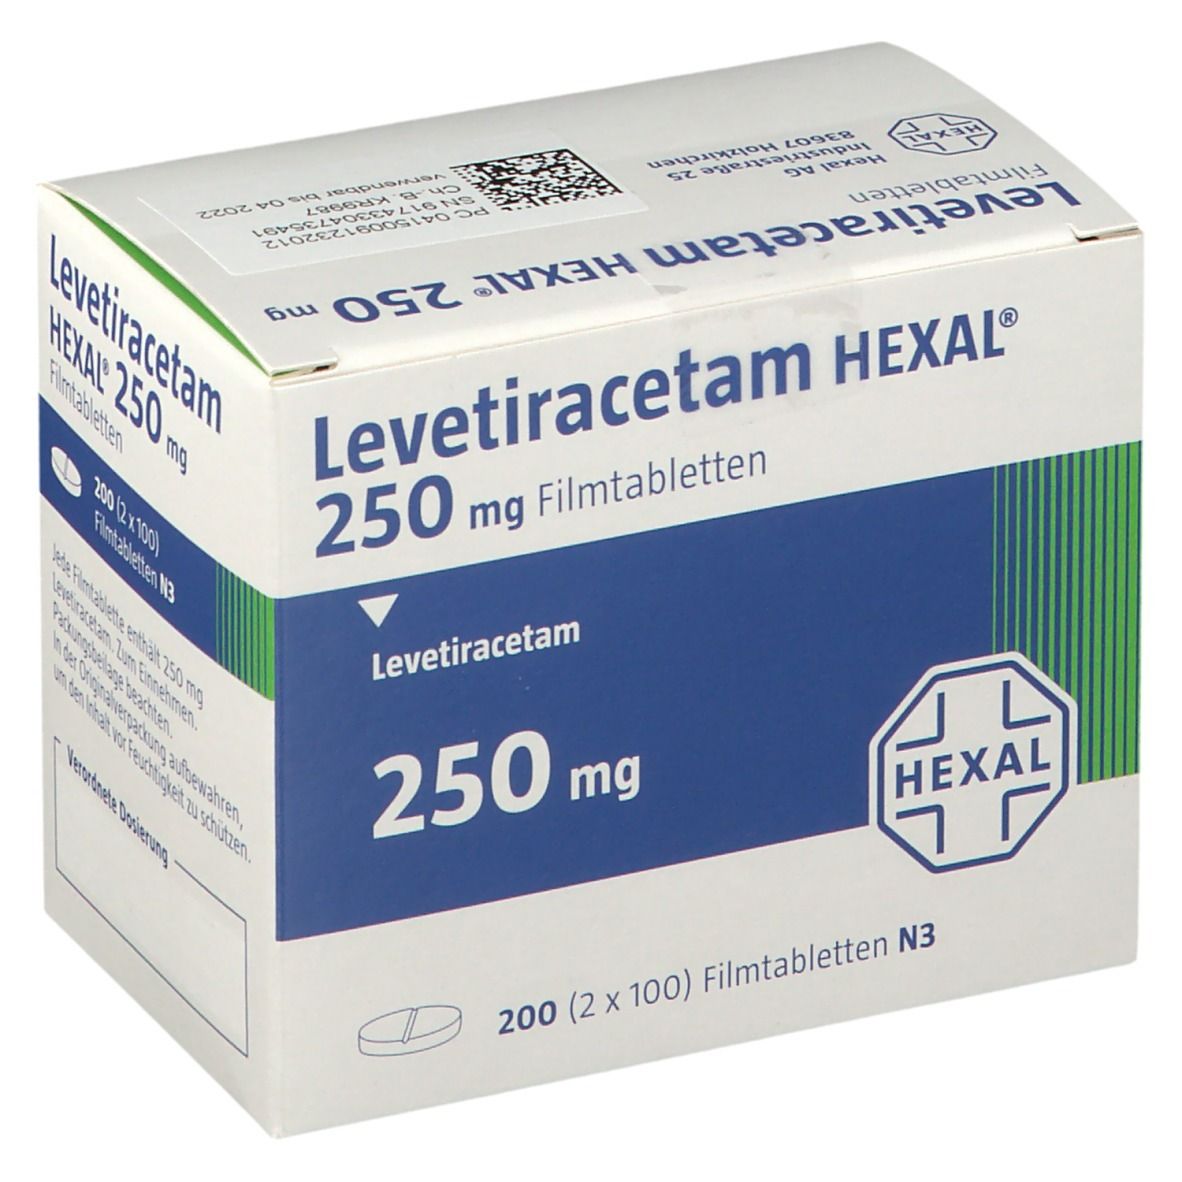 Levetiracetam HEXAL® 250 mg